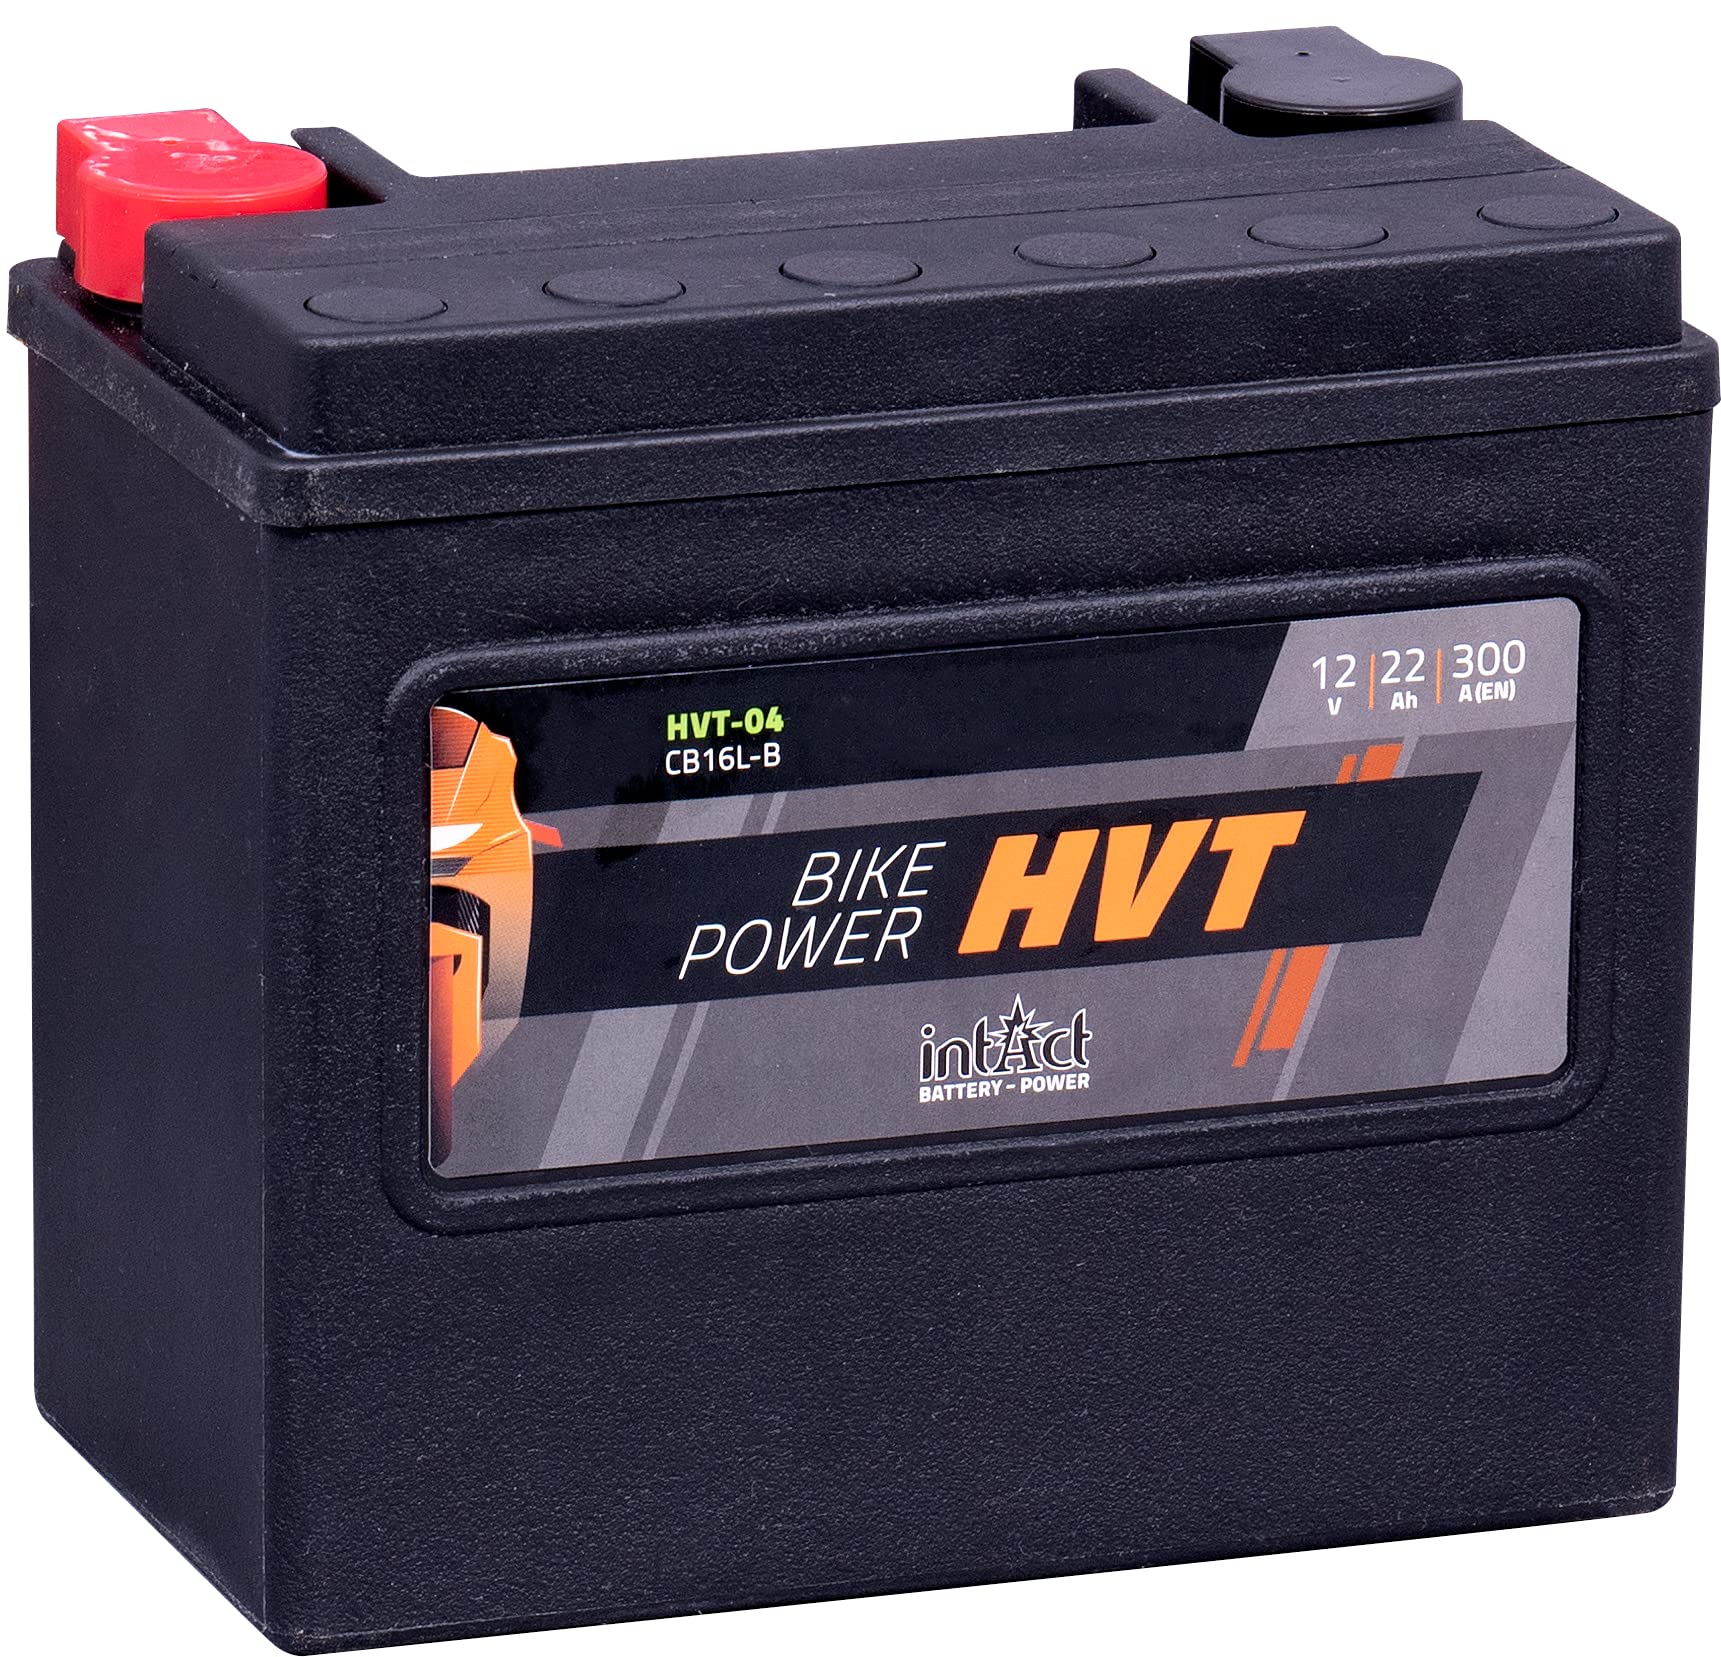 intAct - HVT MOTORRADBATTERIE | Batterie für Roller, Motorrad, Rasentraktor. Wartungsfreier & auslaufsicherer Akku. | HVT-04, CB16L-B, 65989-90B, 12V Batterie, 22 AH (c20), 300 A (EN) | Maße: 176x101x156mm